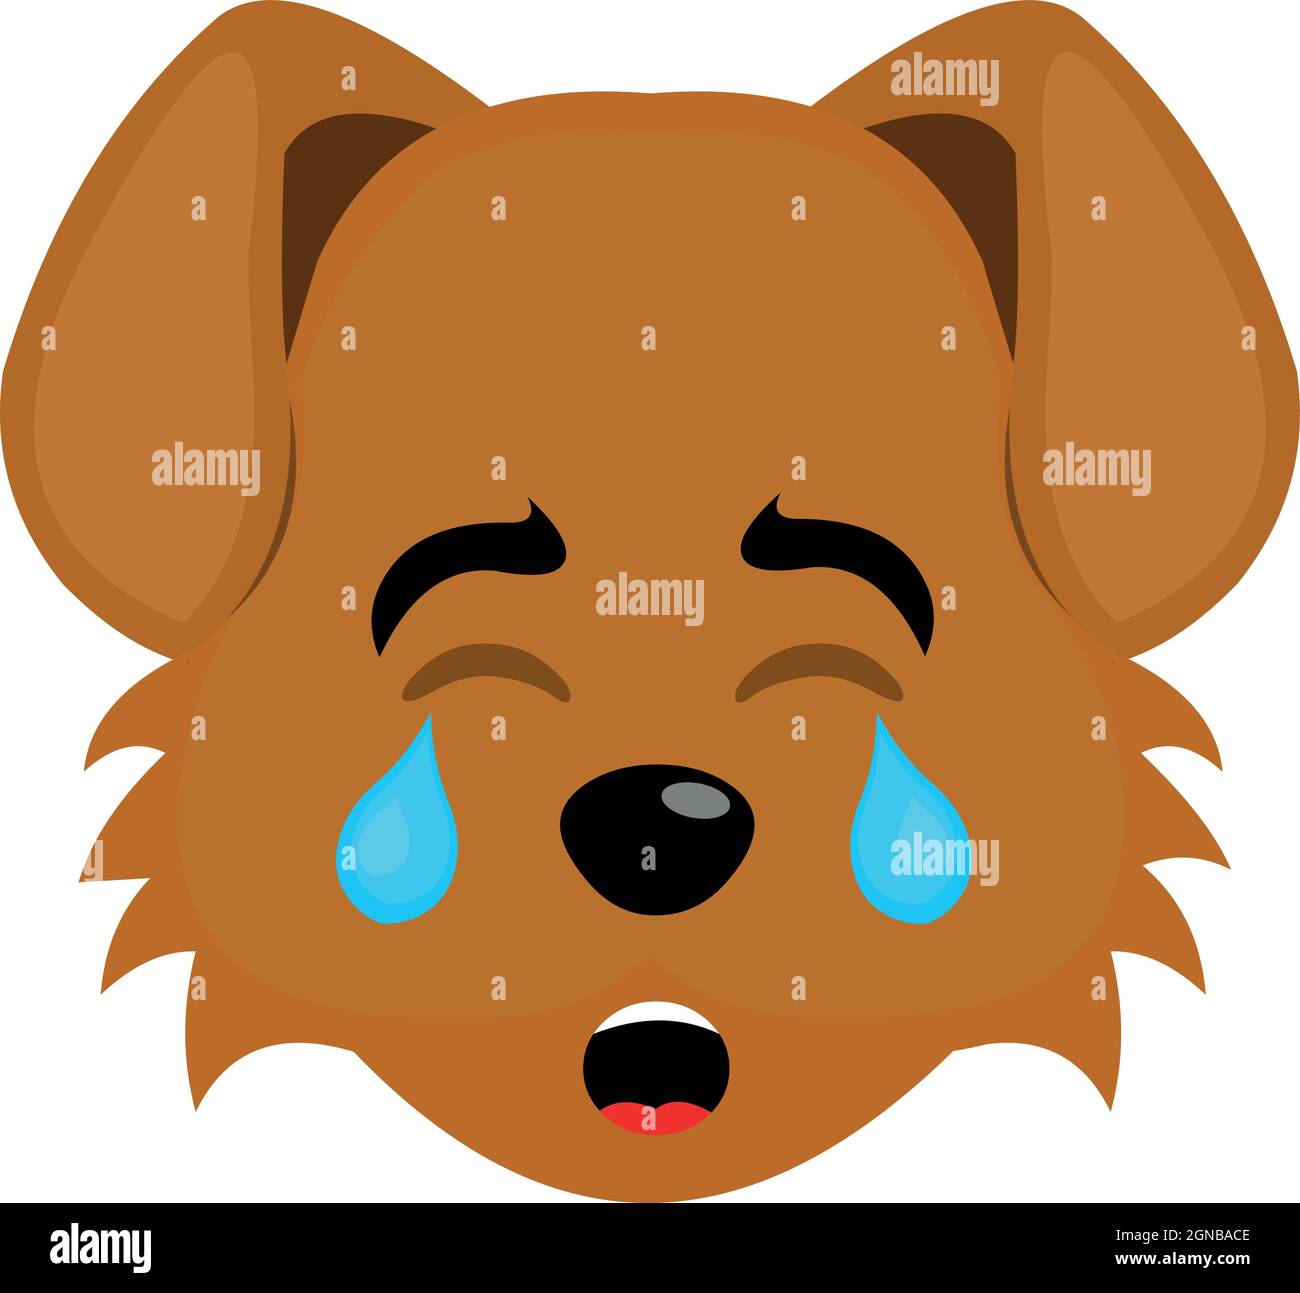 Cane piange fumetto immagini e fotografie stock ad alta risoluzione - Alamy